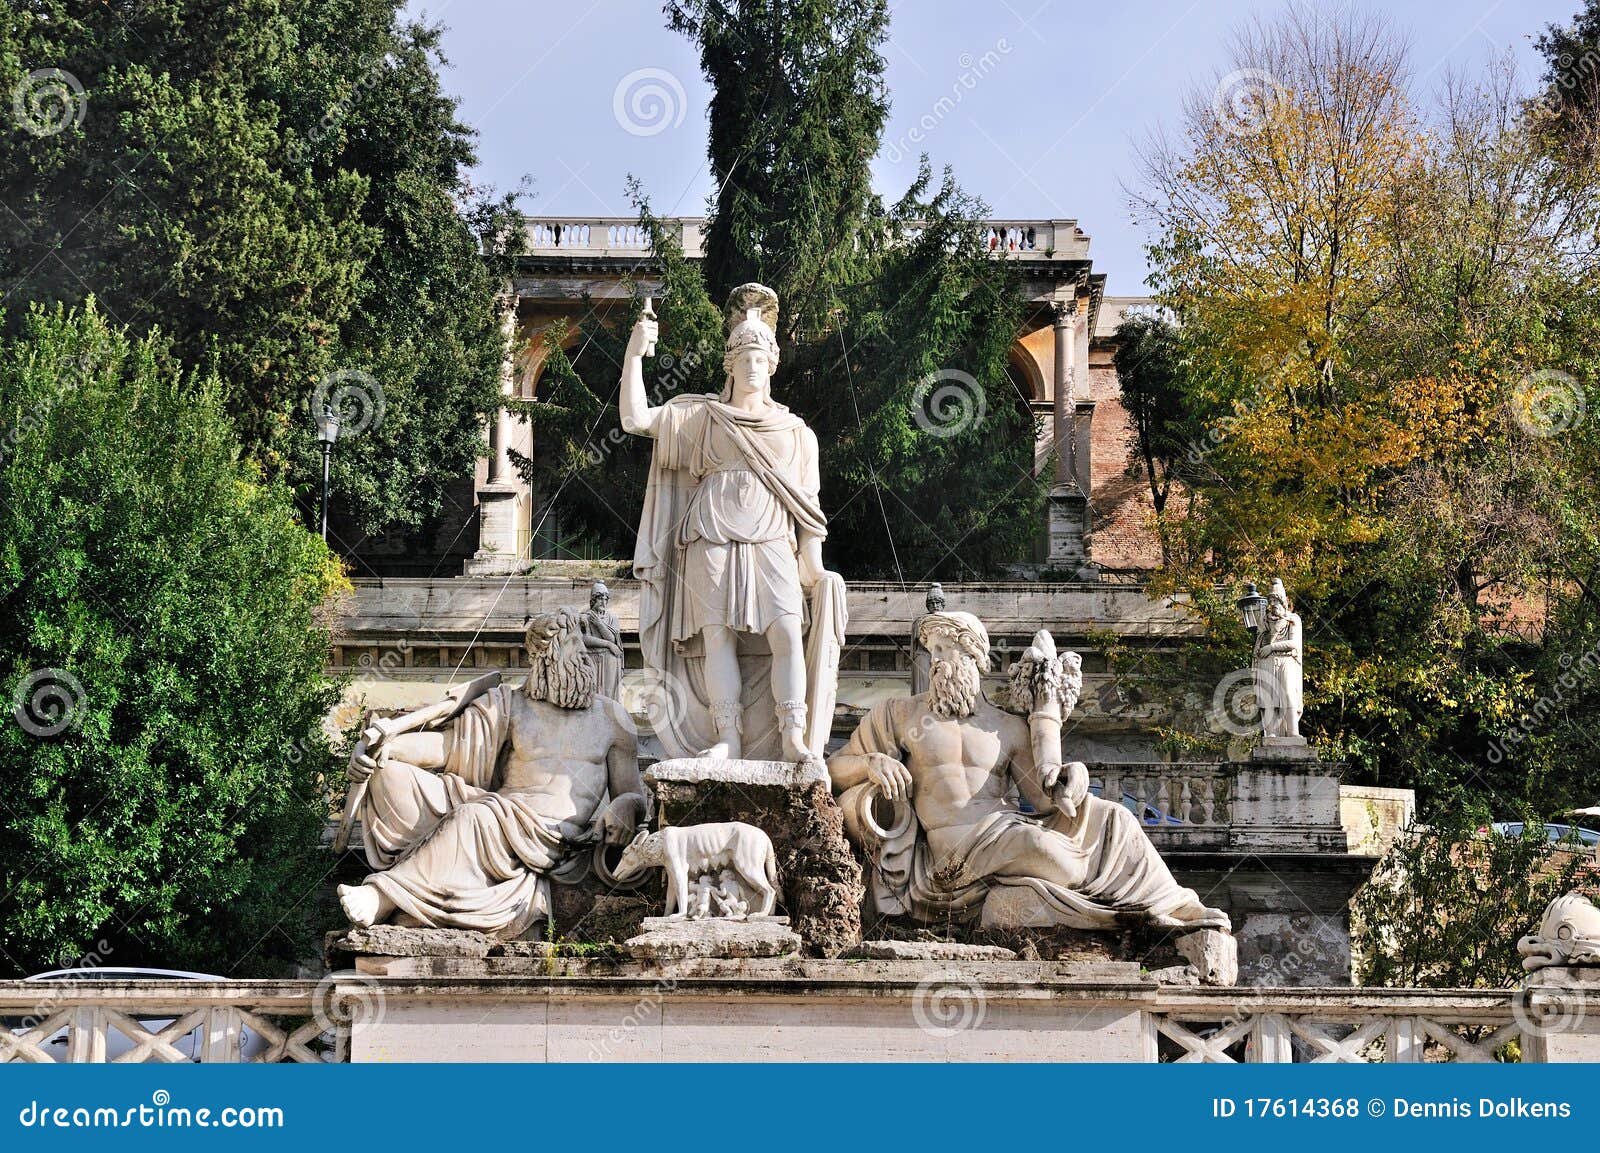 statues on piazza del popolo